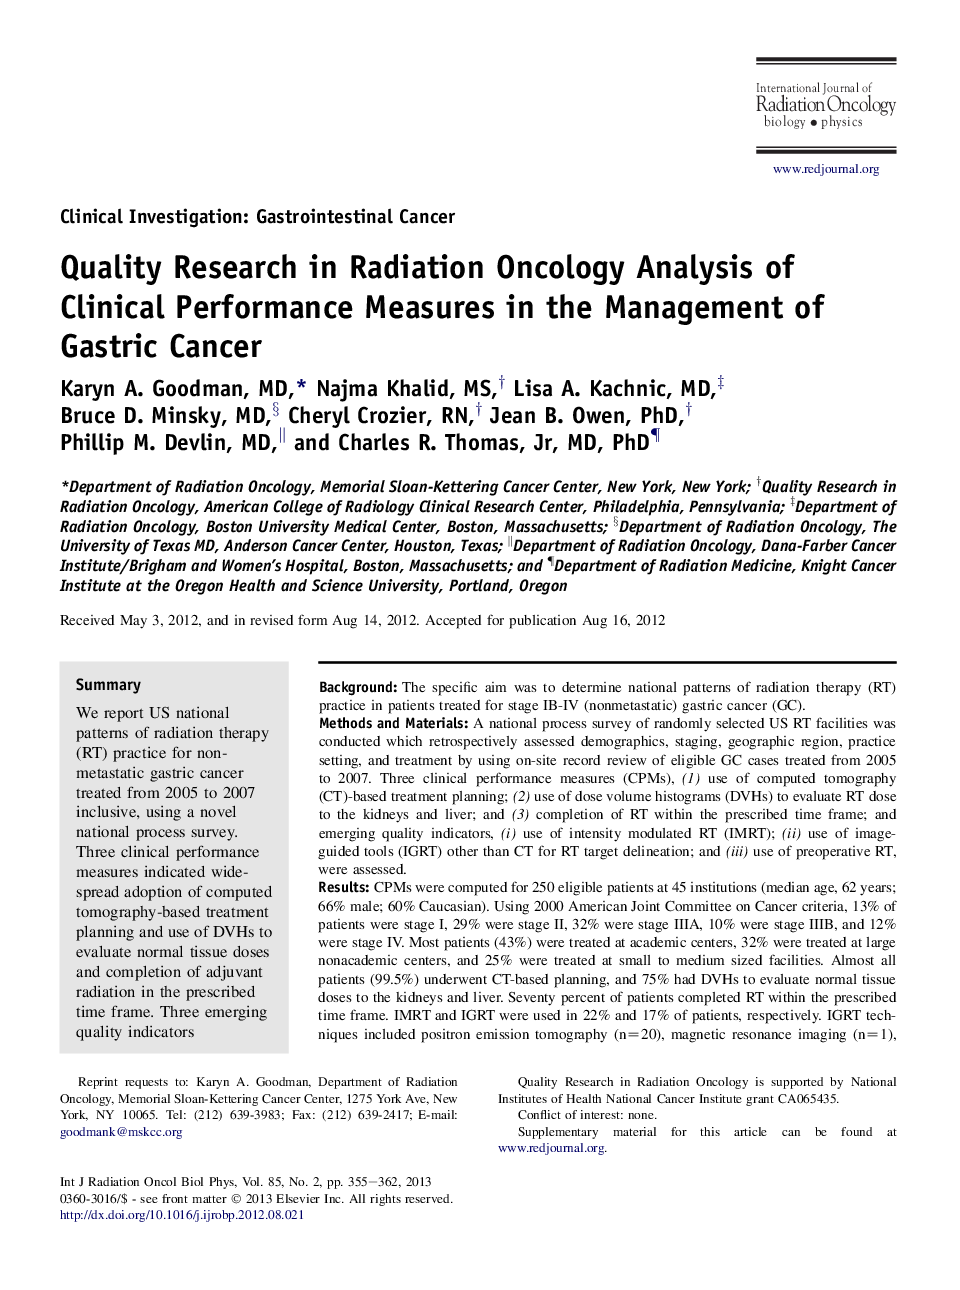 تحقیقات کیفی در تحلیل رادیولوژی آنکولوژی اقدامات بالینی در مدیریت سرطان معده 